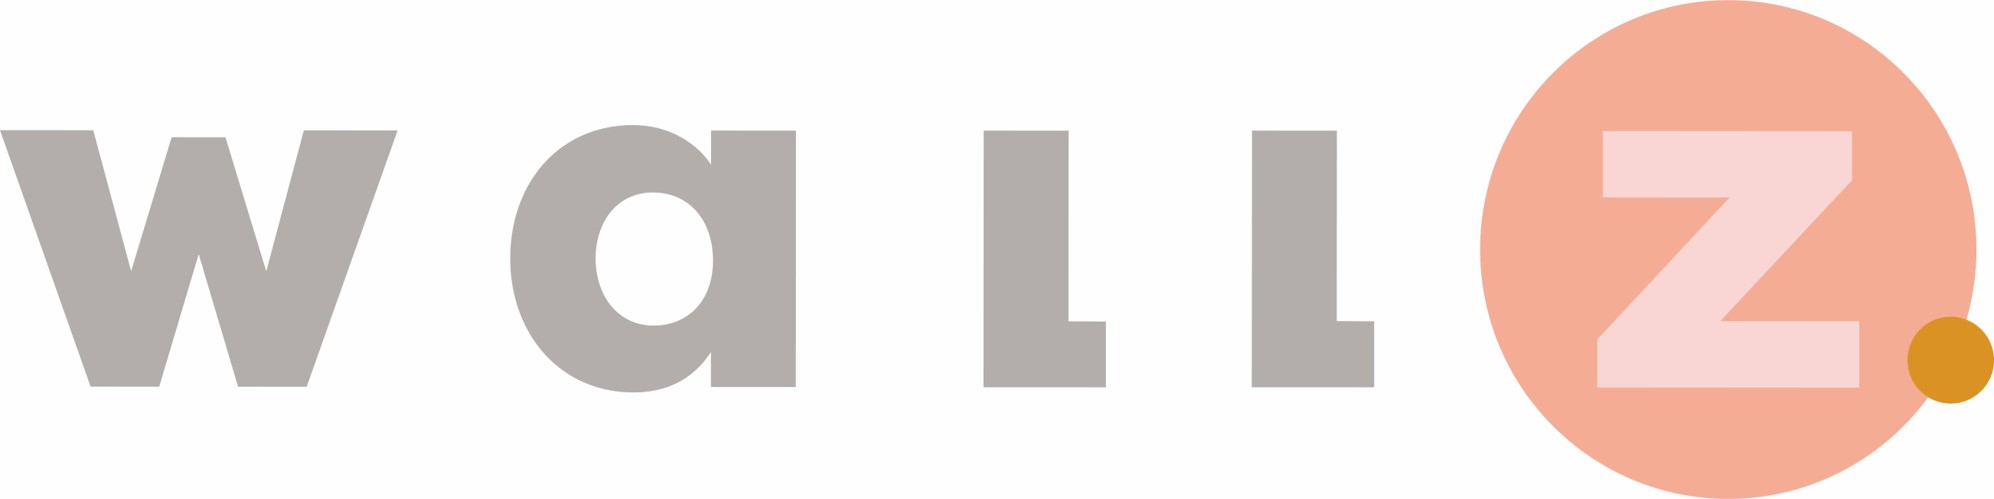 Wallz logo